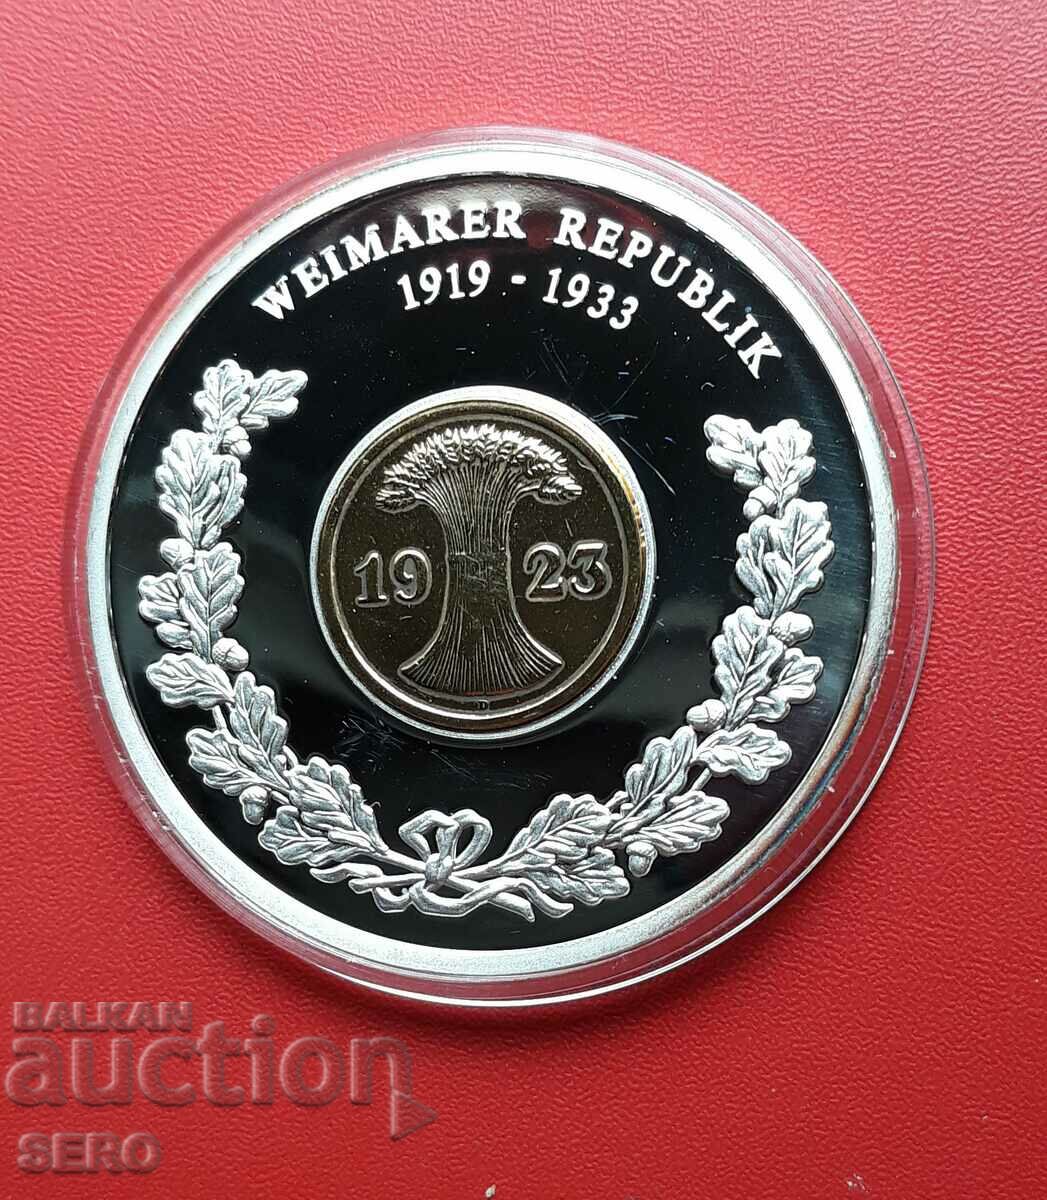 Germania-medalie cu monedă 2 pfennig 1923 D-München